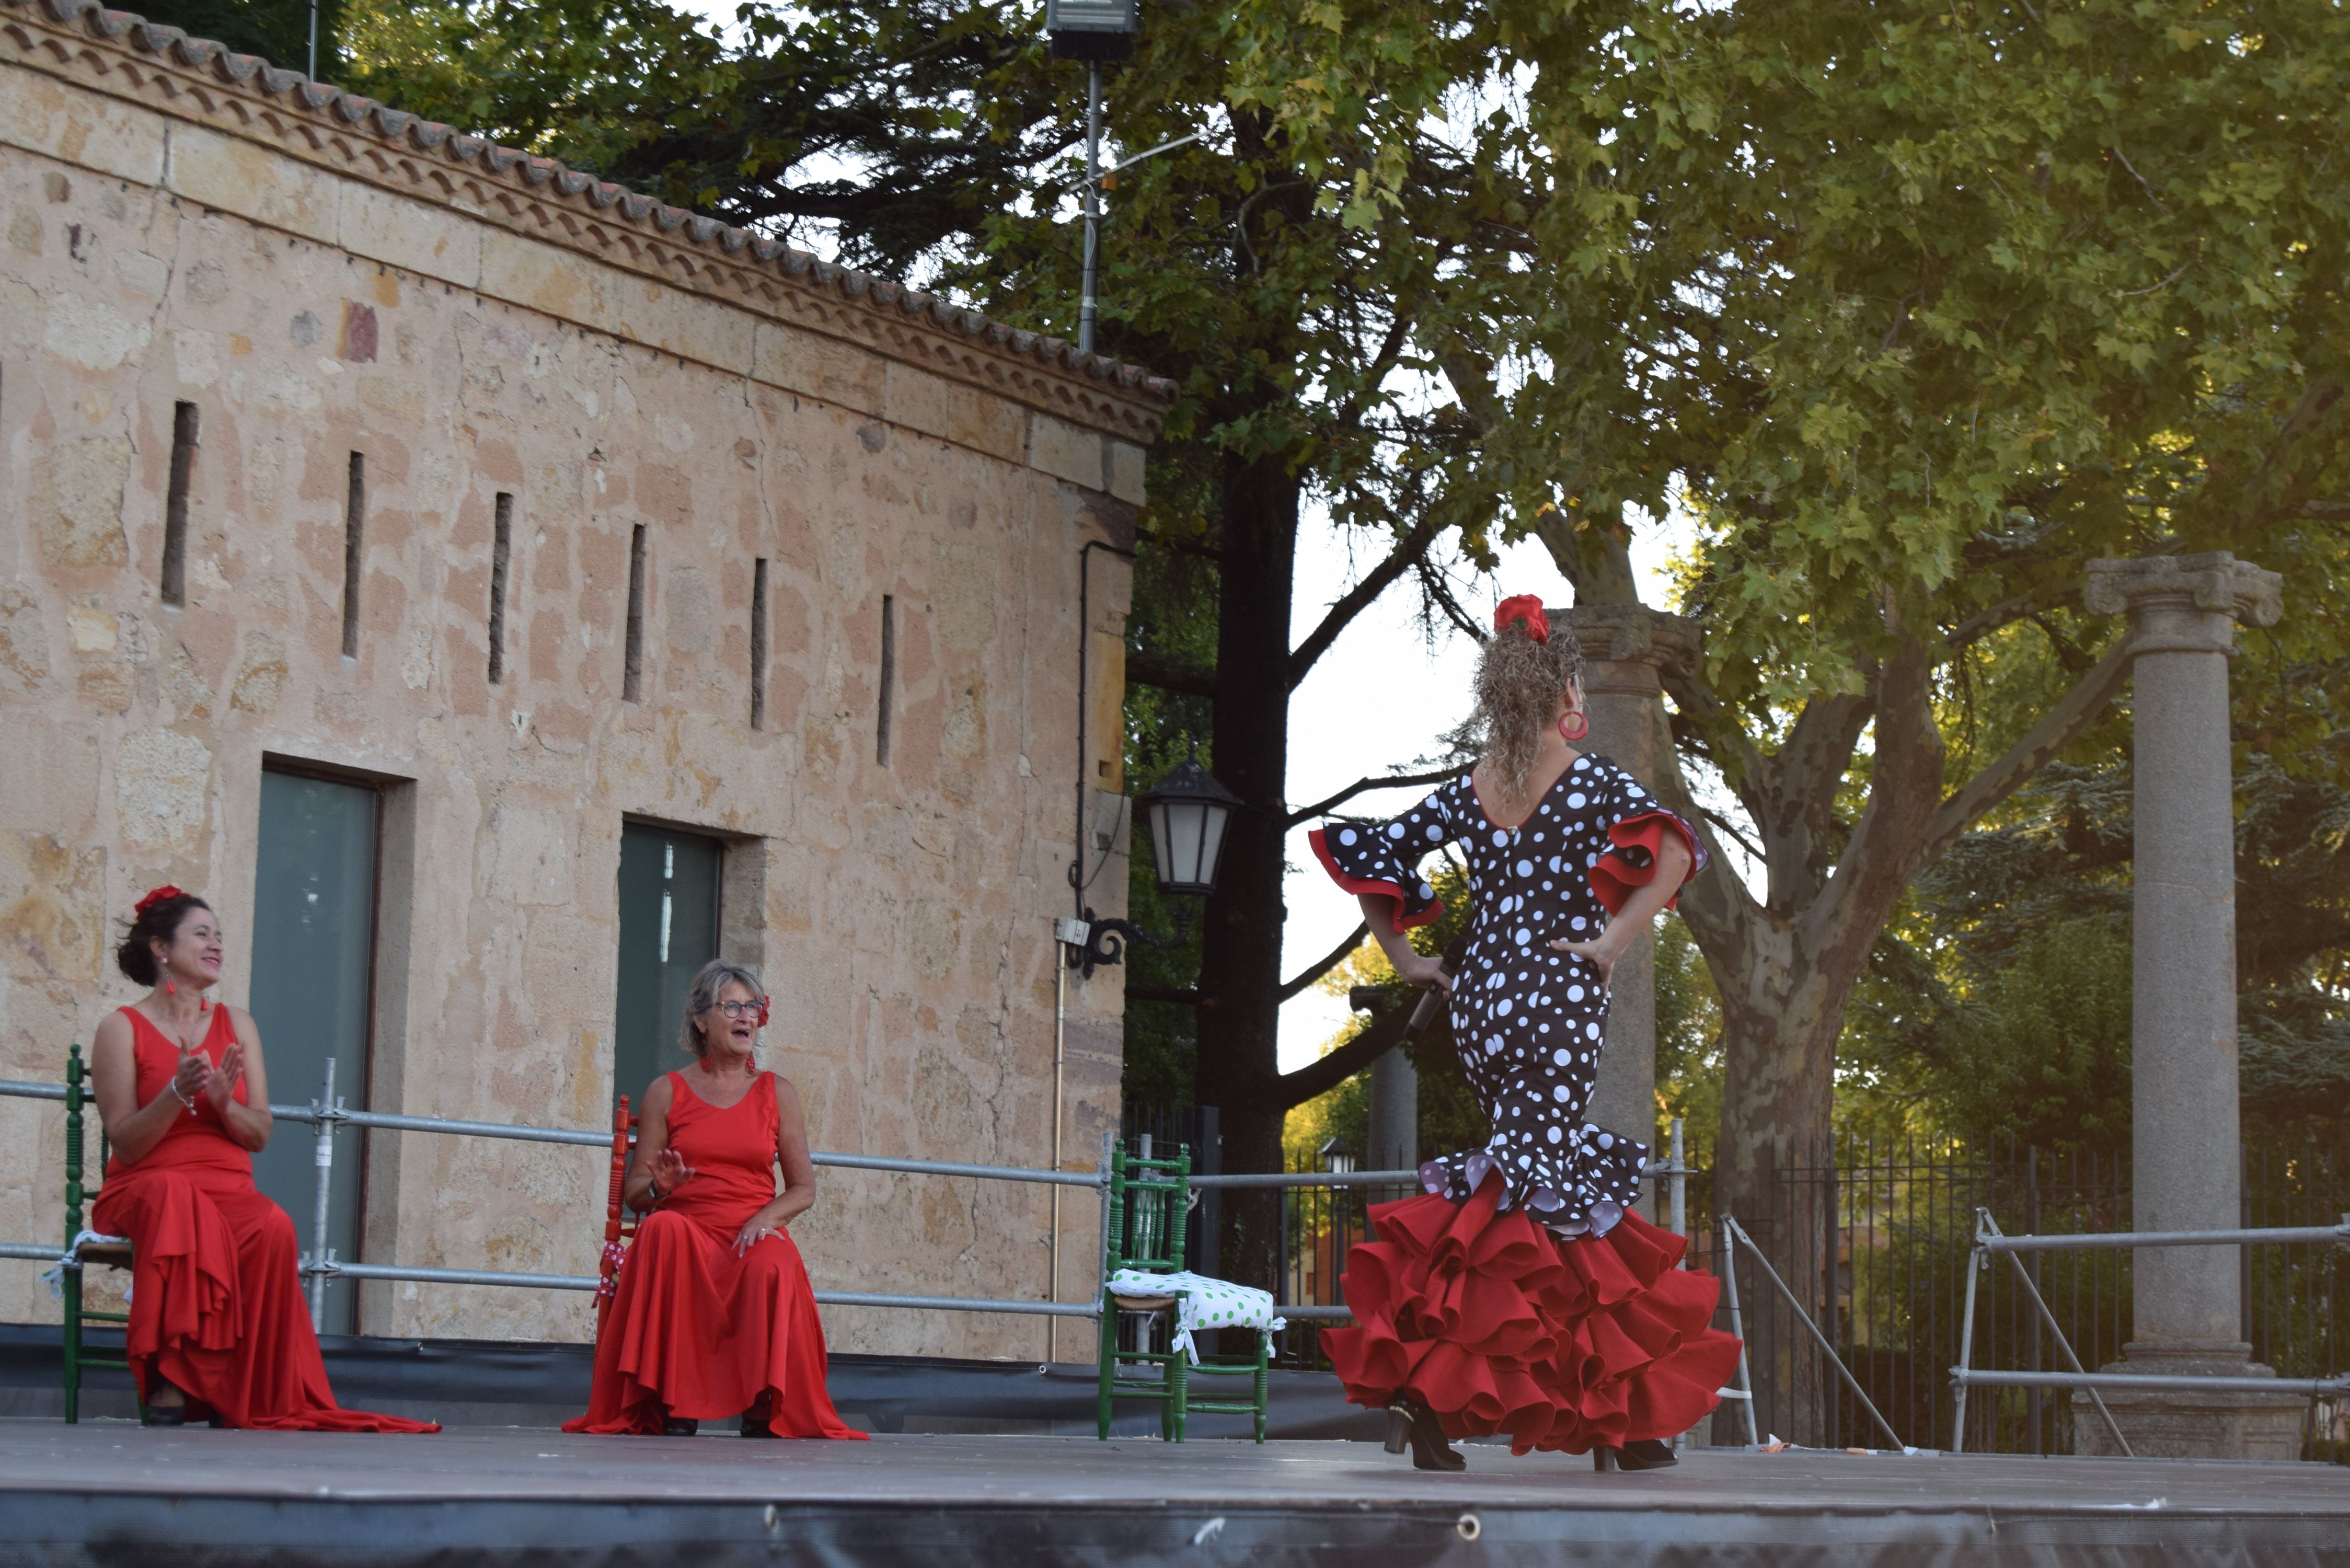 Añoranza despliega su arte con el flamenco (7)